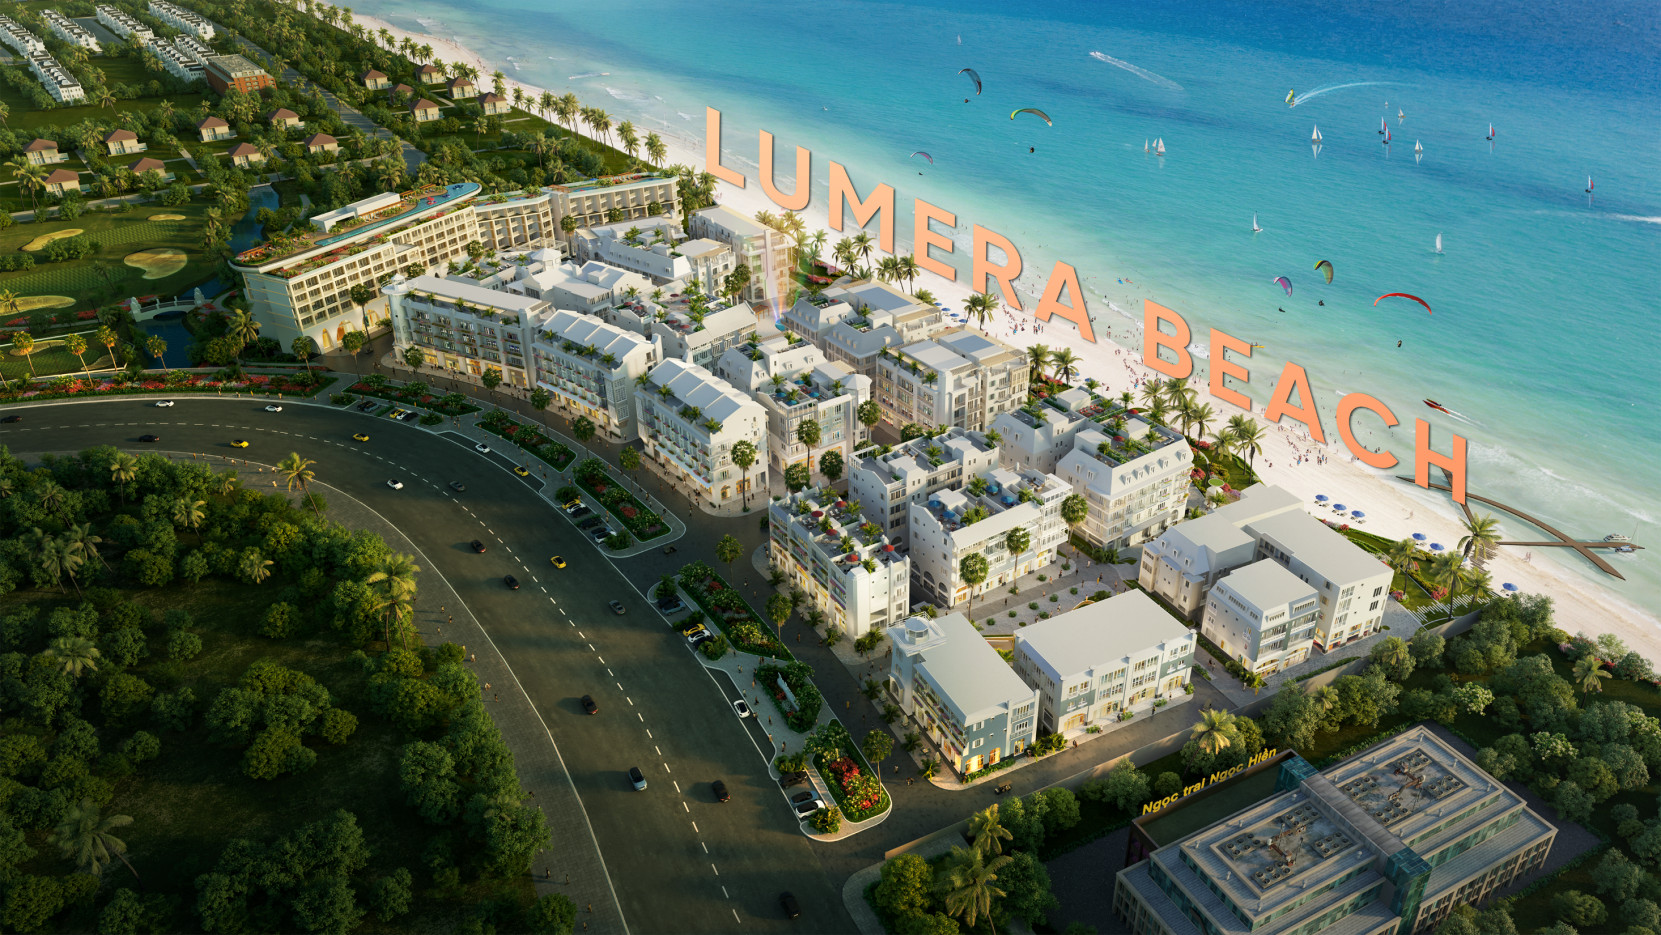 4. Mật Độ Xây Dựng Hợp Lý:Mật độ xây dựng chỉ chiếm 30% diện tích tổng thể, giúp Lumera Beach giữ được không gian xanh, thoáng đãng. Điều này không chỉ tạo nên một môi trường sống trong lành, yên bình cho cư dân mà còn làm tăng giá trị thẩm mỹ, thu hút du khách.